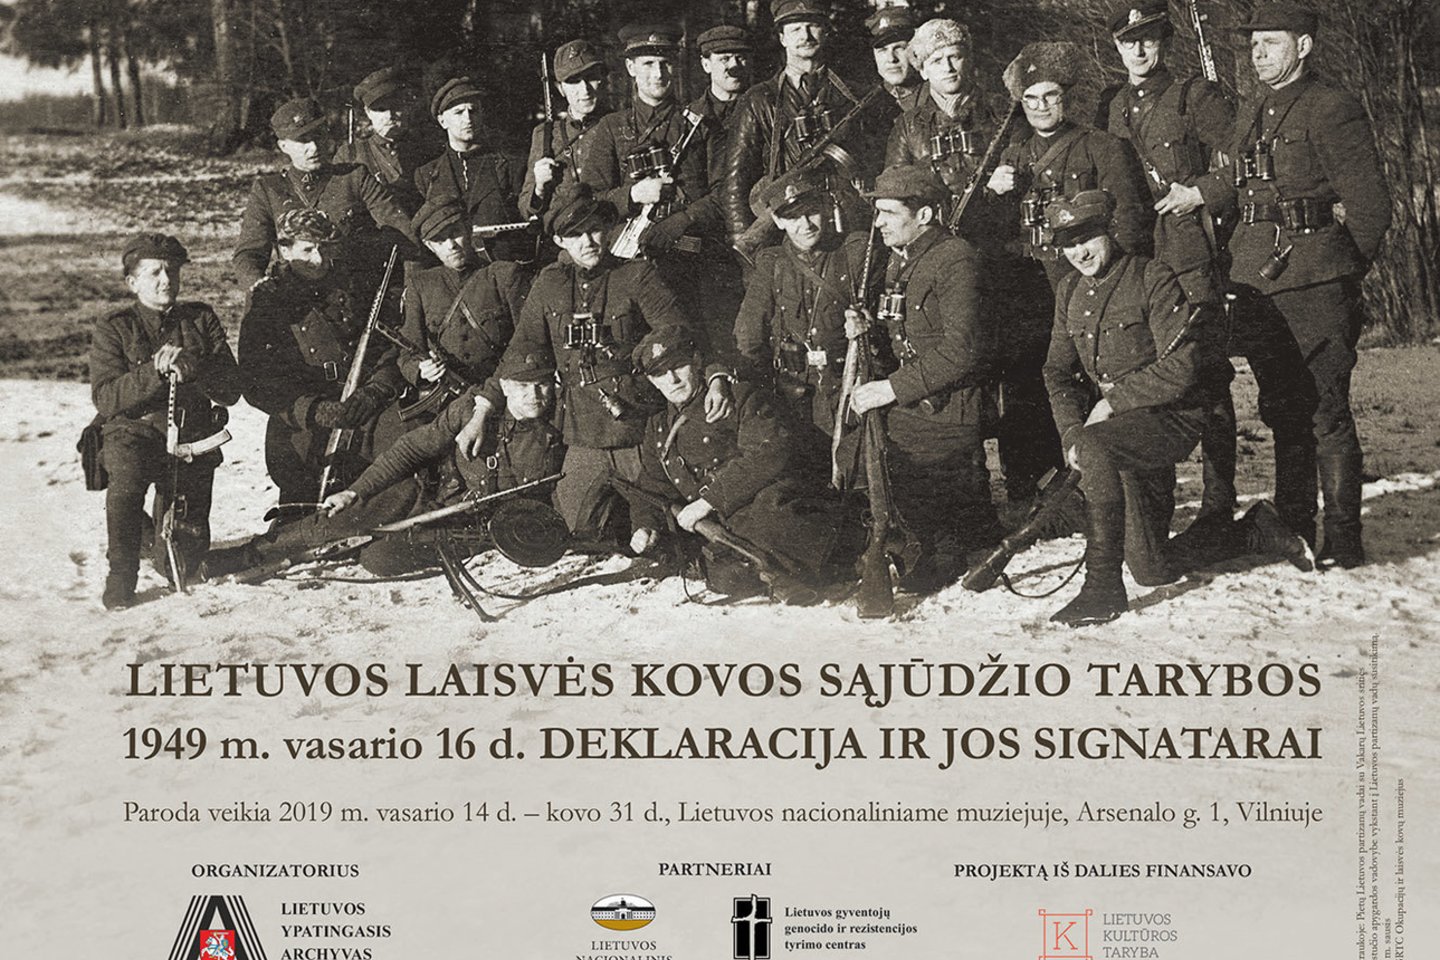  Paroda „Lietuvos Laisvės Kovos Sąjūdžio Tarybos 1949 m. vasario 16 d. deklaracija ir jos signatarai“.<br> Organizatorių nuotr.